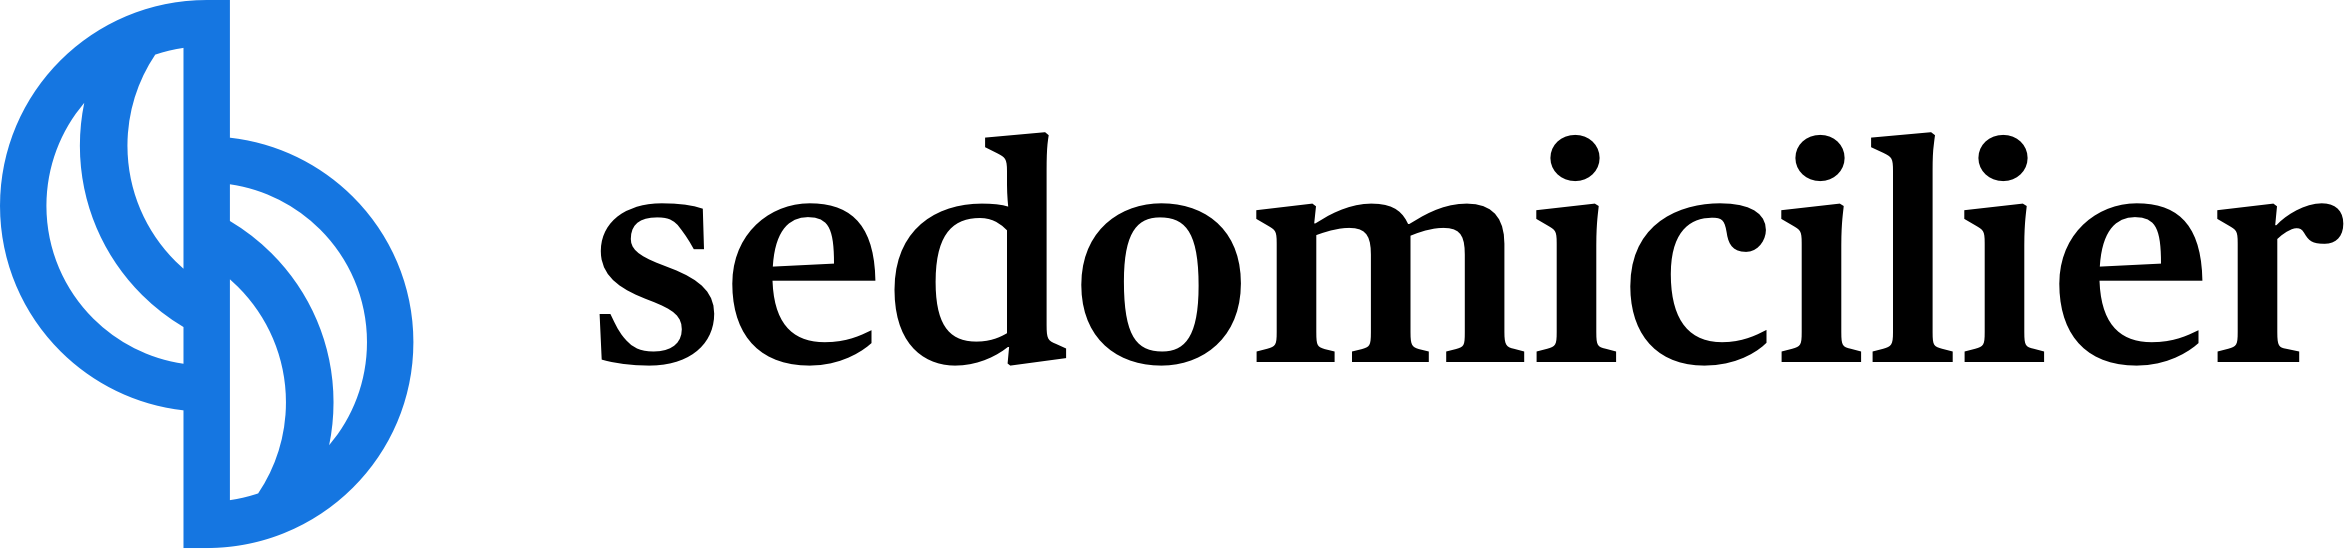 sedomicilier logo couleur horizontal (1)